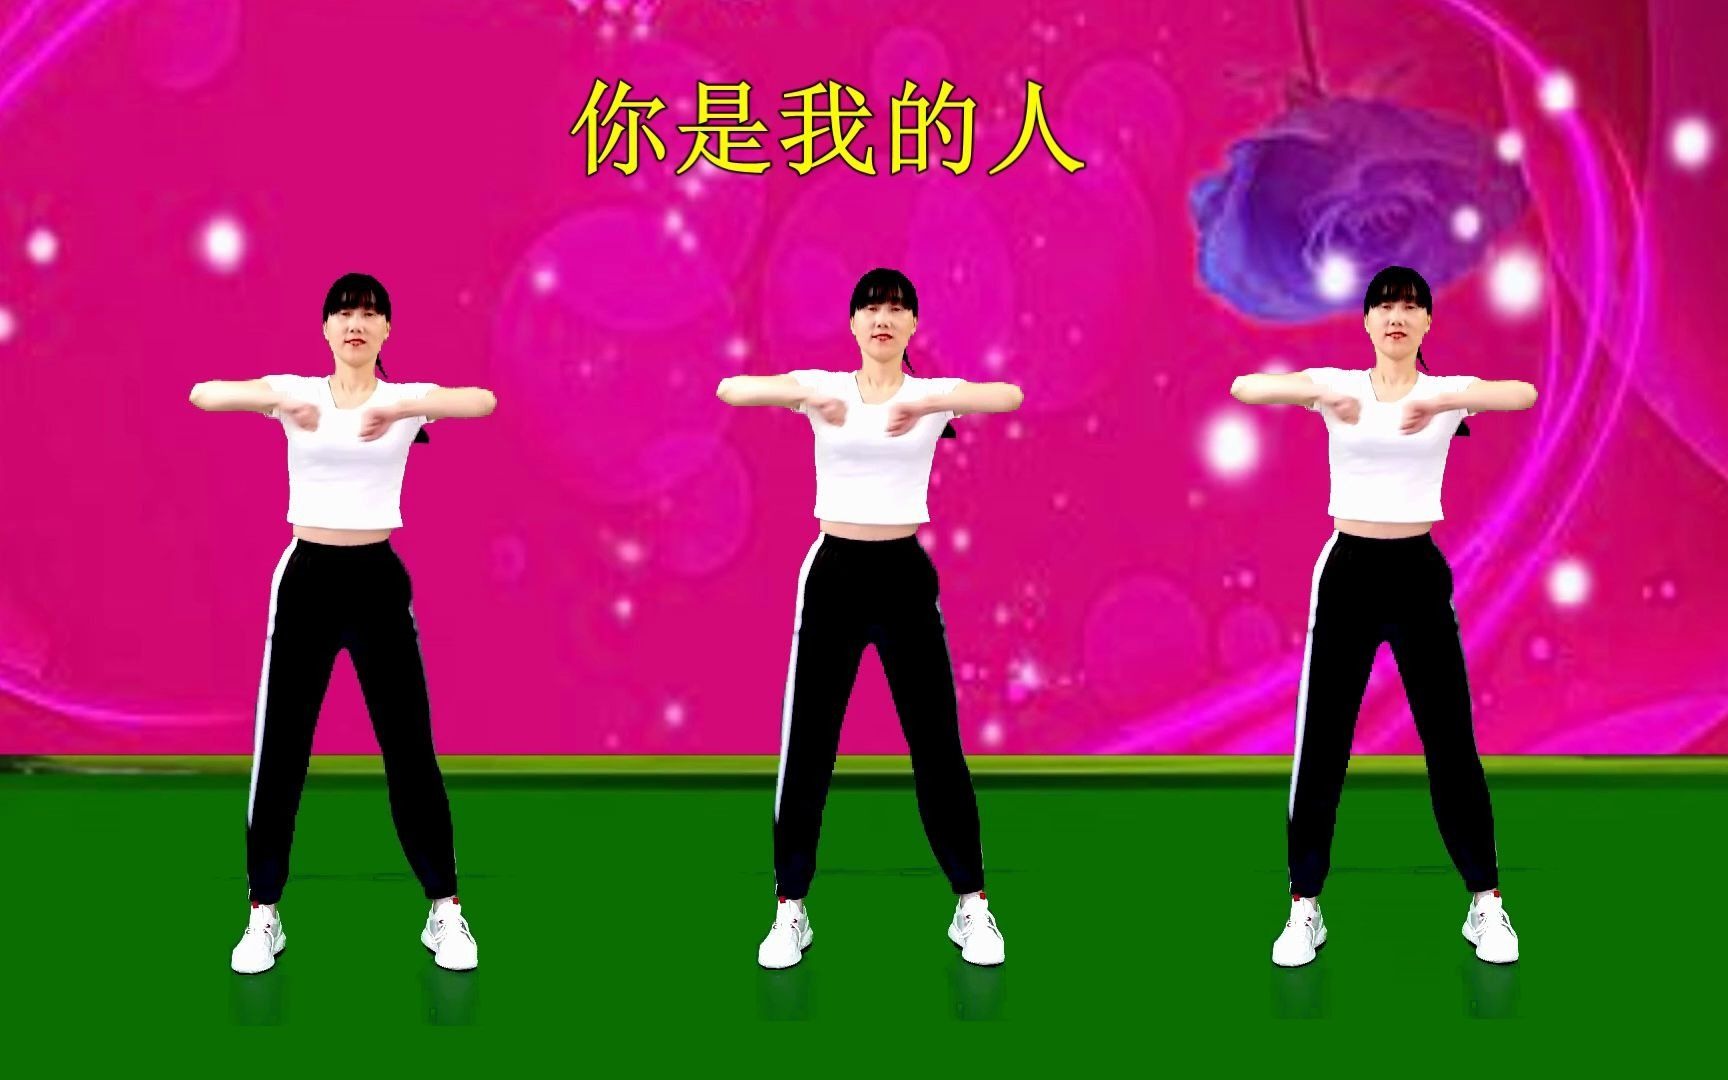 30分钟健身舞 - J&A dance workout 第2辑-呵哈呵哈哈哈哈哈zh-健身-哔哩哔哩视频